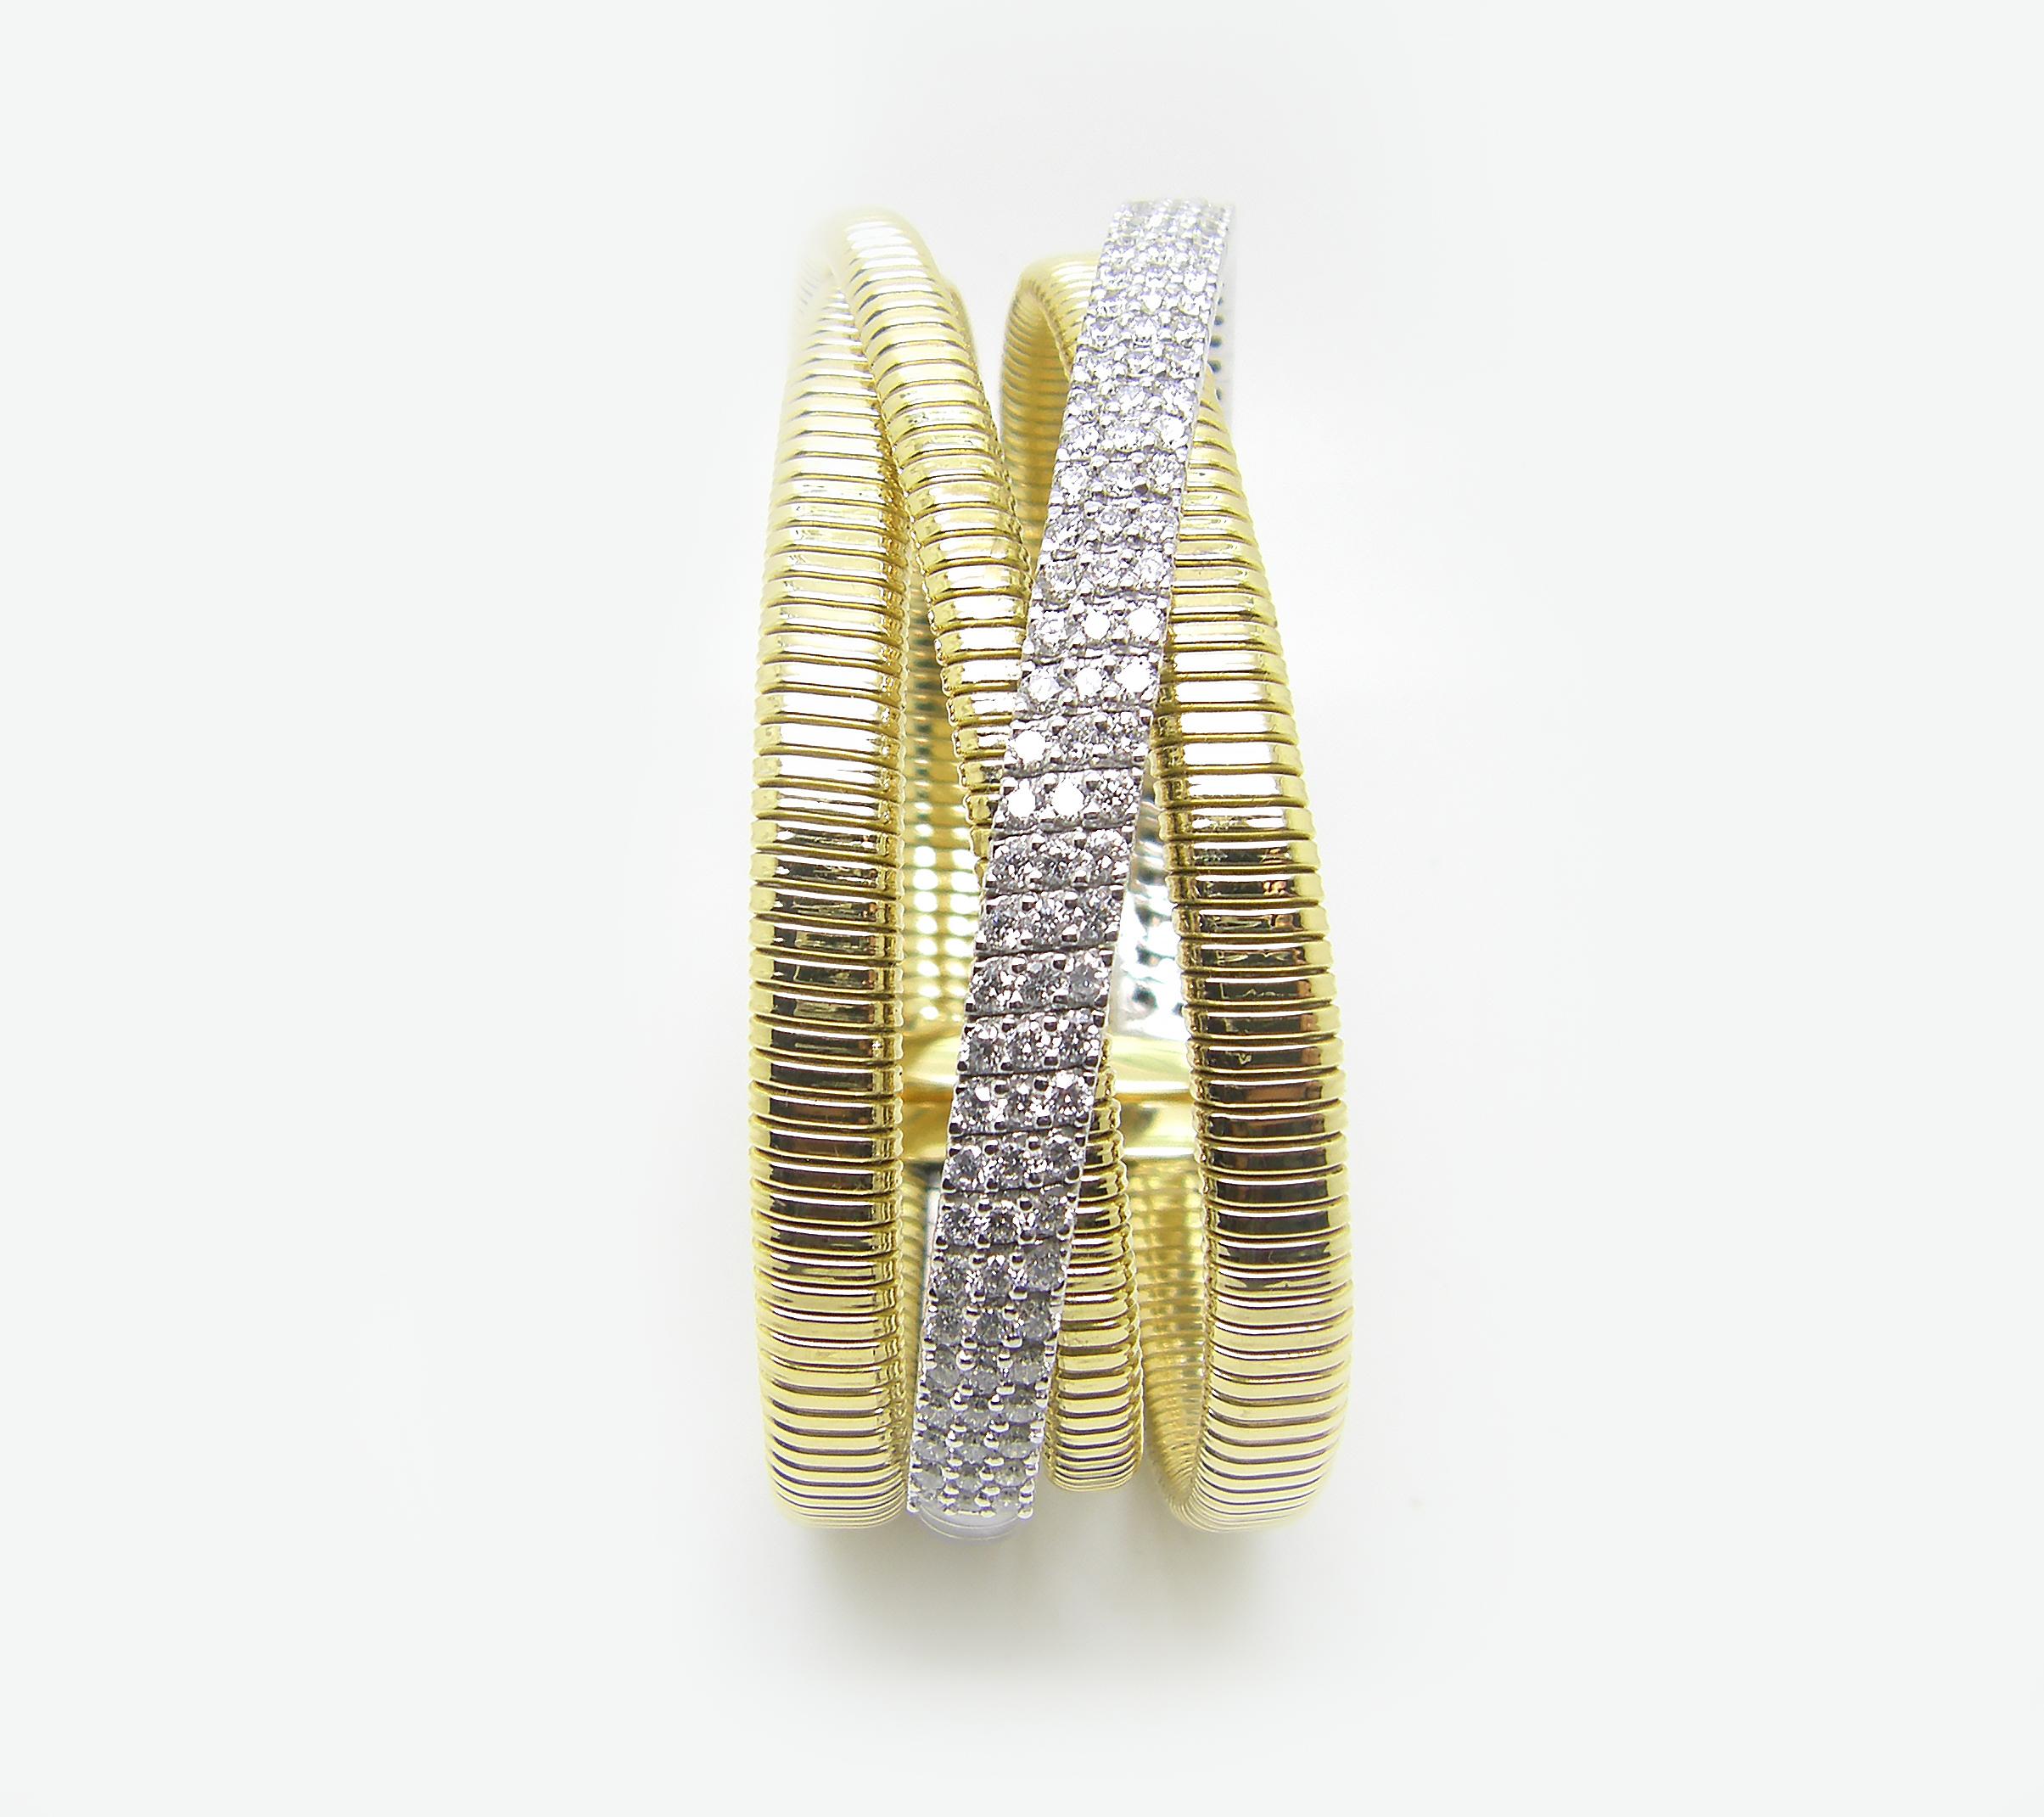 Le bracelet manchette bicolore du designer S.Georgios est en or blanc et jaune massif 18 carats et a été fabriqué sur mesure. Ce magnifique bracelet est fabriqué à la main à partir de quatre bracelets attachés ensemble et flexibles, ce qui le rend